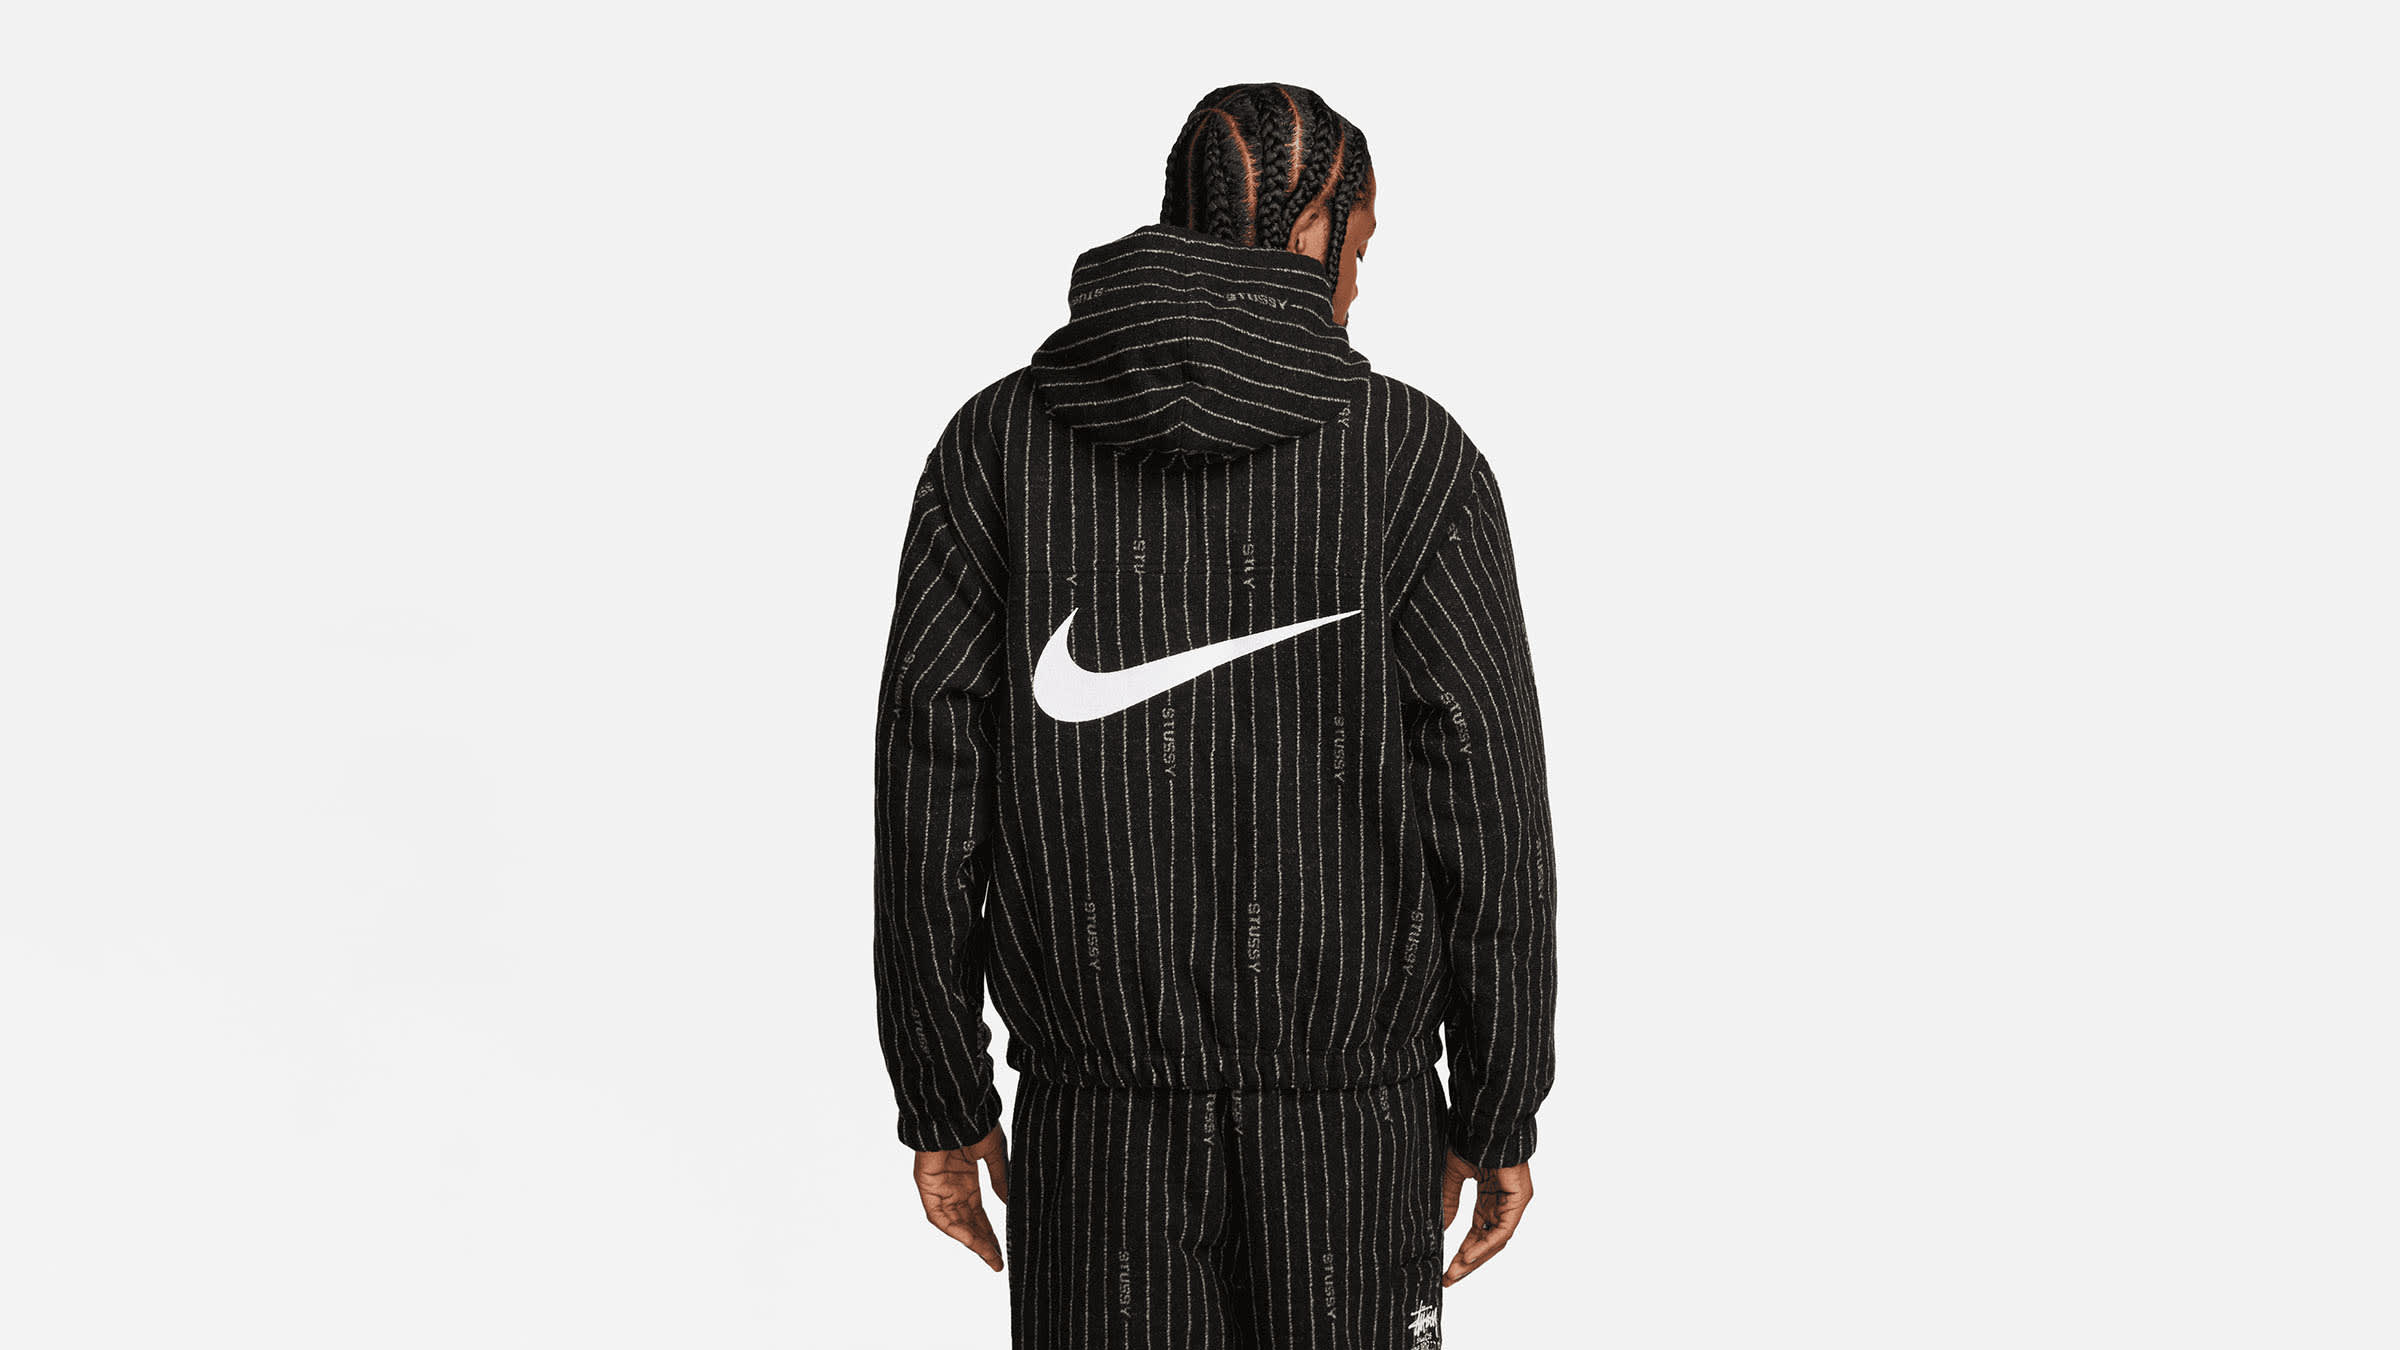 フラワーオブライフ Stussy x Nike Striped Wool Jacket Black - 通販